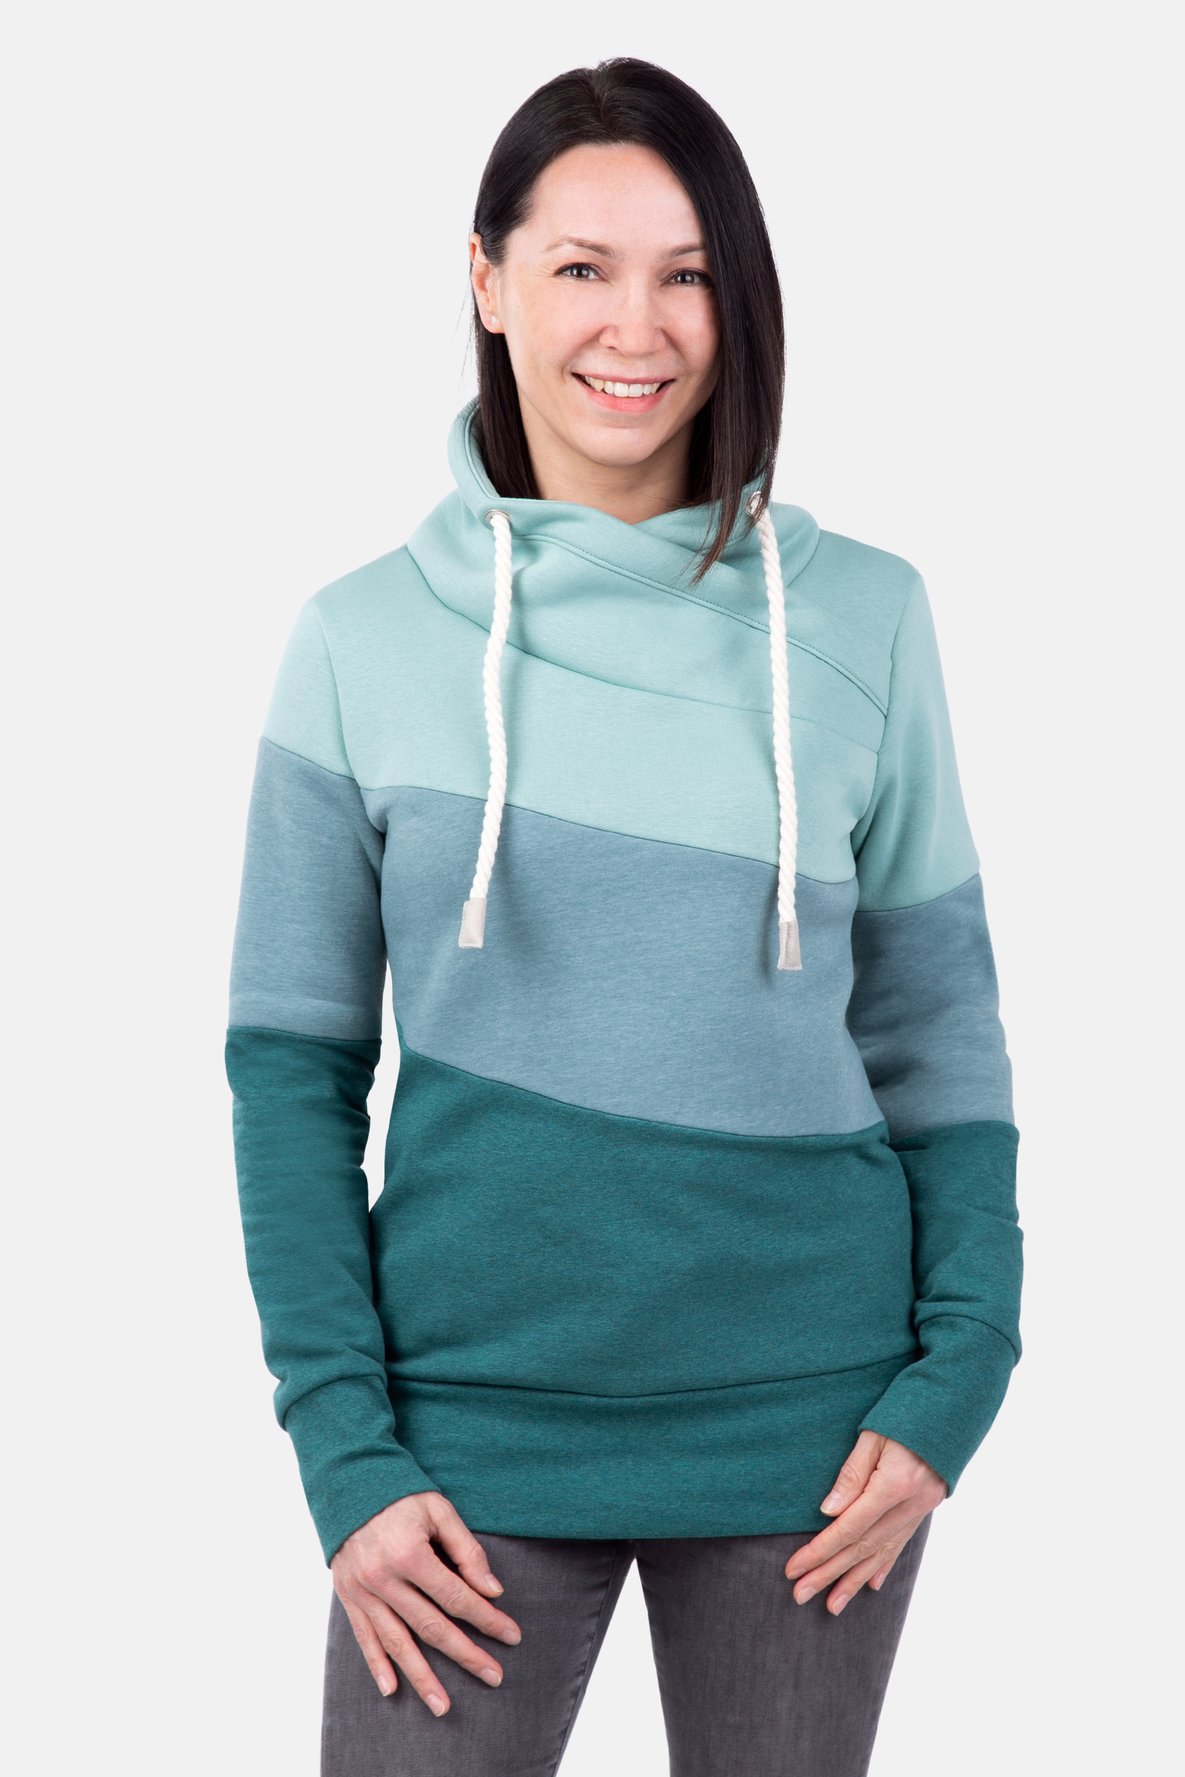 Schnittmuster Sweater Colourblock Teilungsnähte Wickelkragen nähen